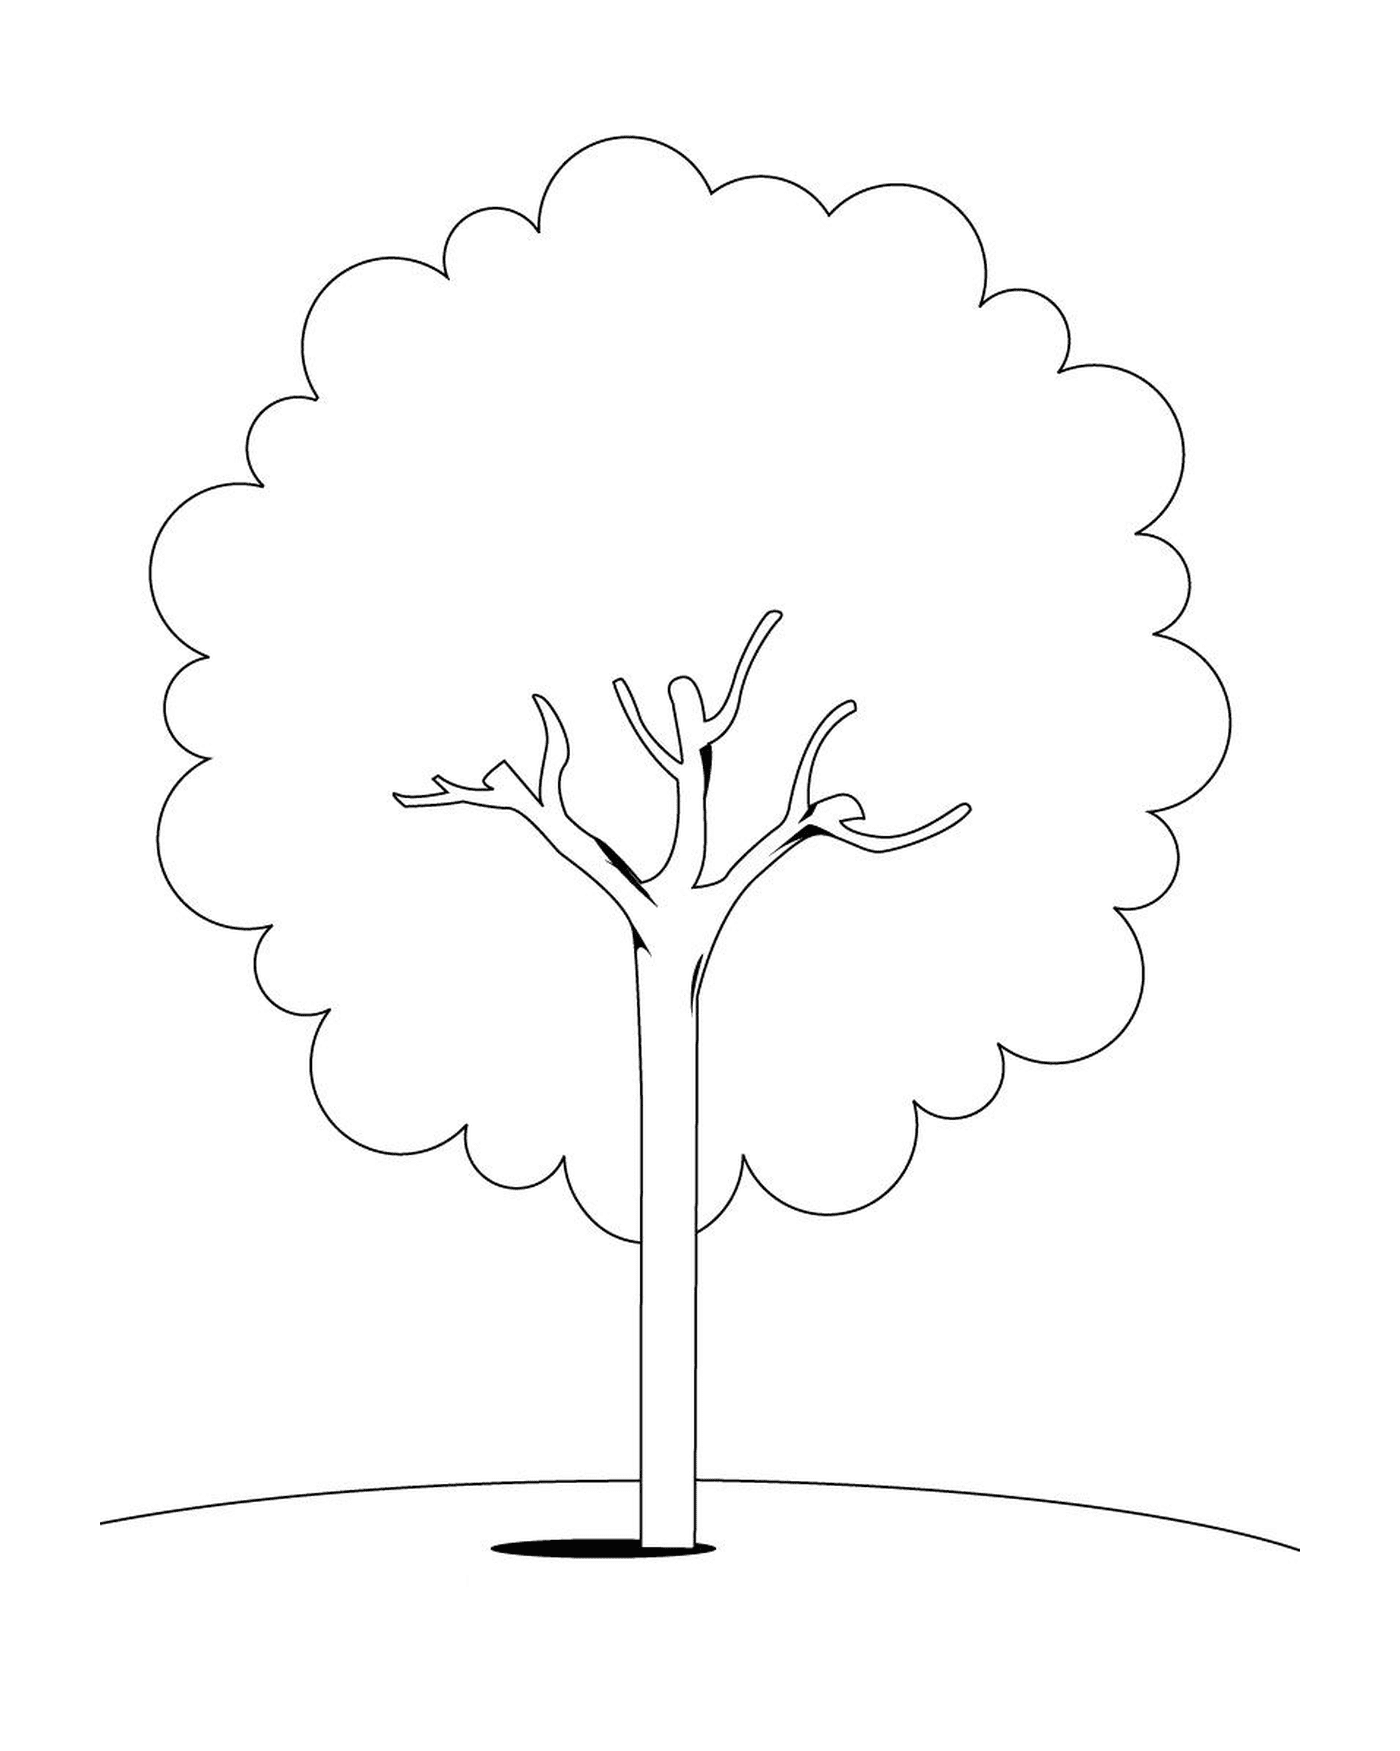  Una imagen de un árbol 